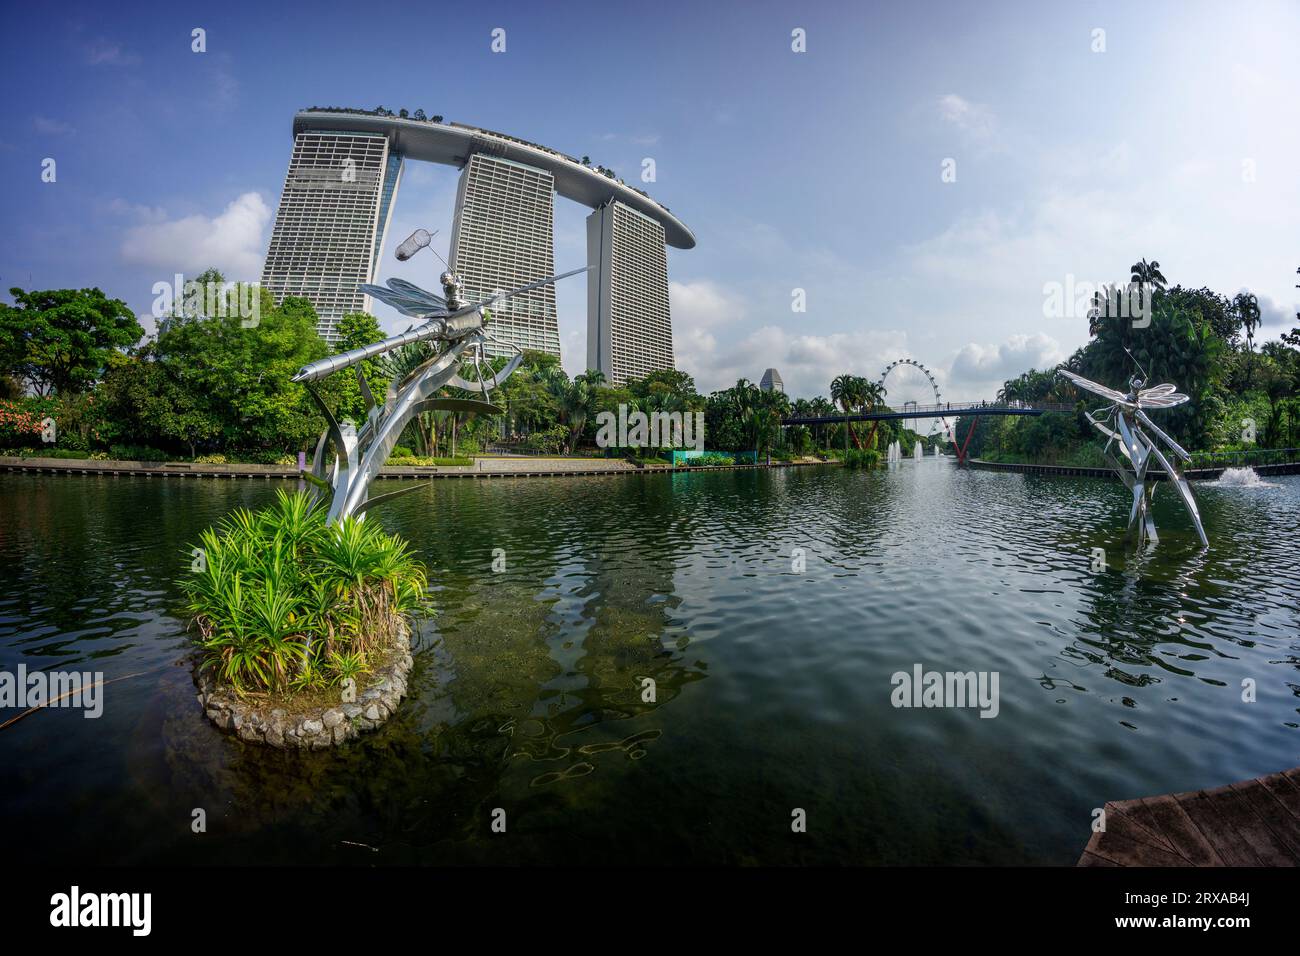 Le acque di Dragonfly si trovano nel lago Gardens by the Bay, con l'iconico edificio Marina Bay Sands, Singapore, Sud Est Asiatico Foto Stock